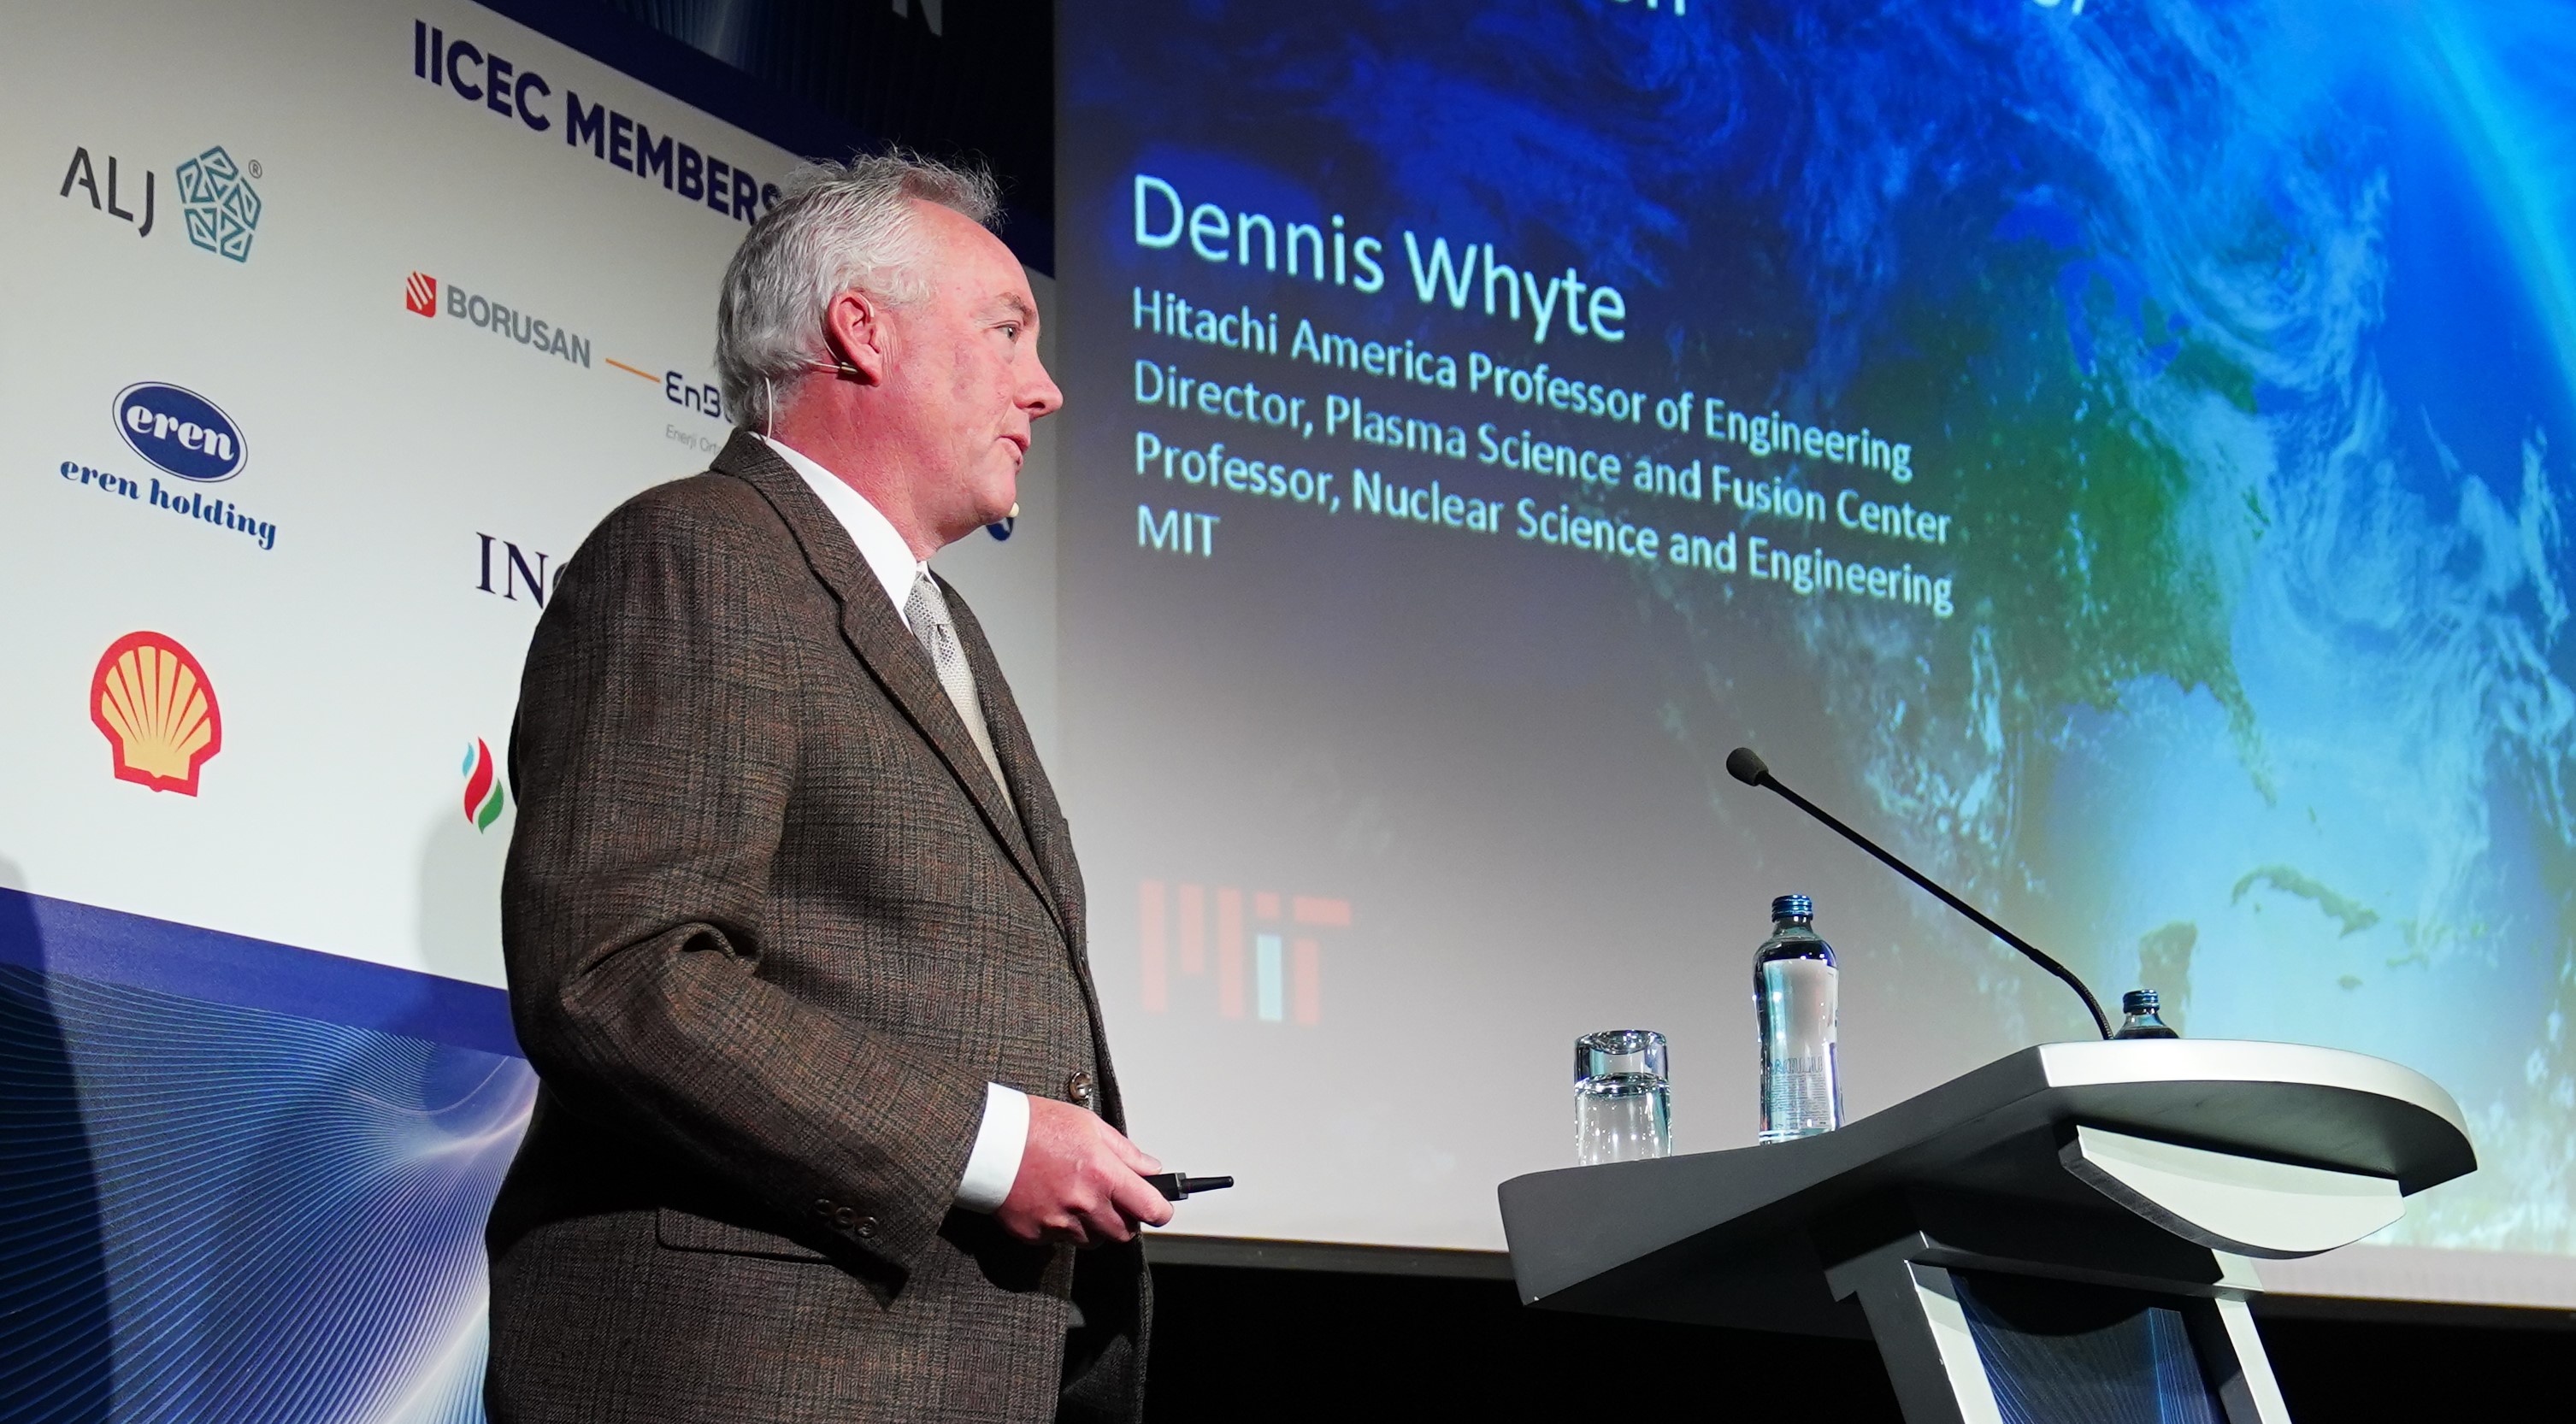 Dennis Whyte